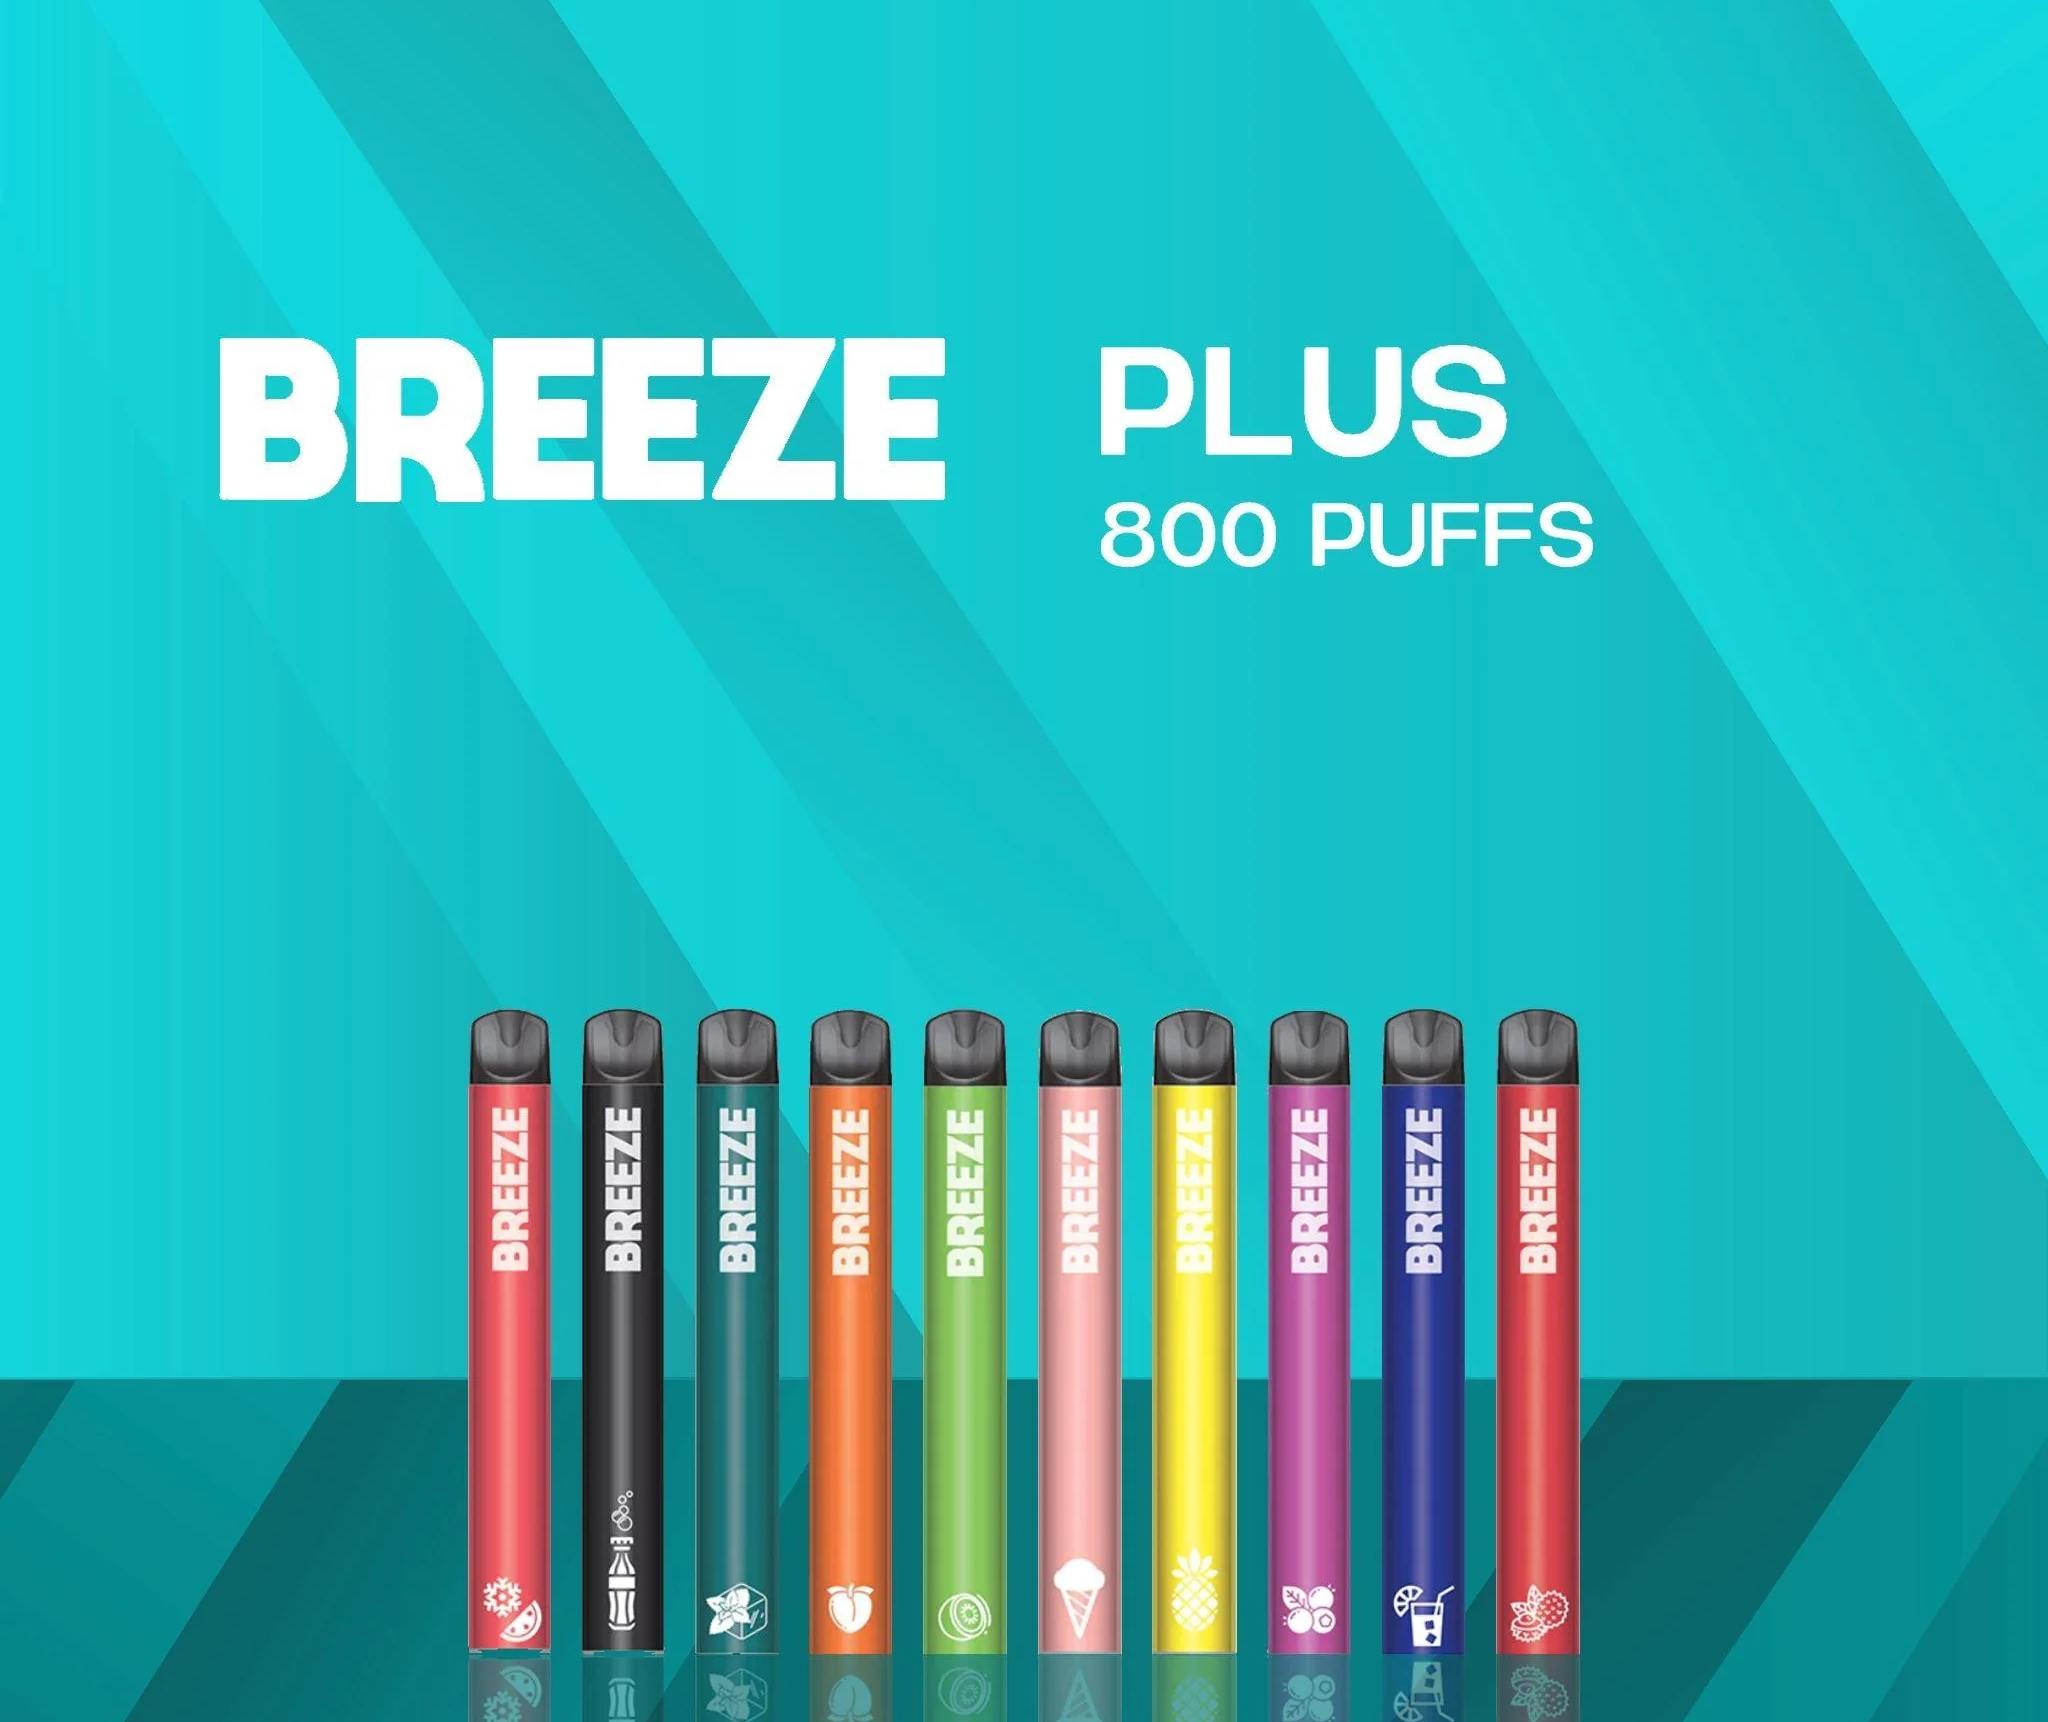 The Breeze Plus Disposable Vape Device Flavor Extravaganza